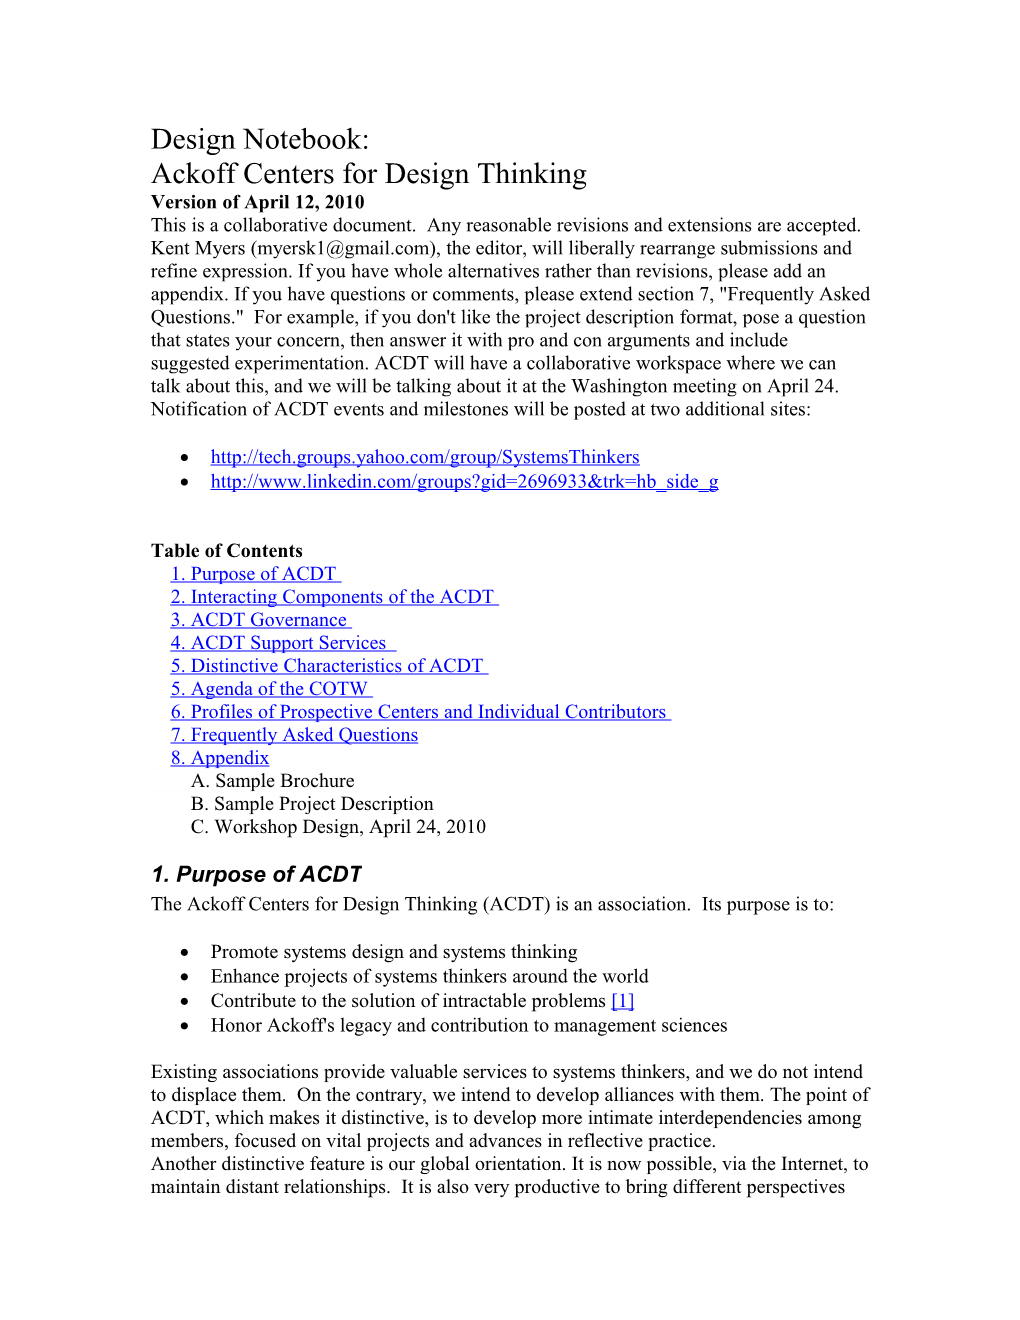 ACDT Design Notebook April 12